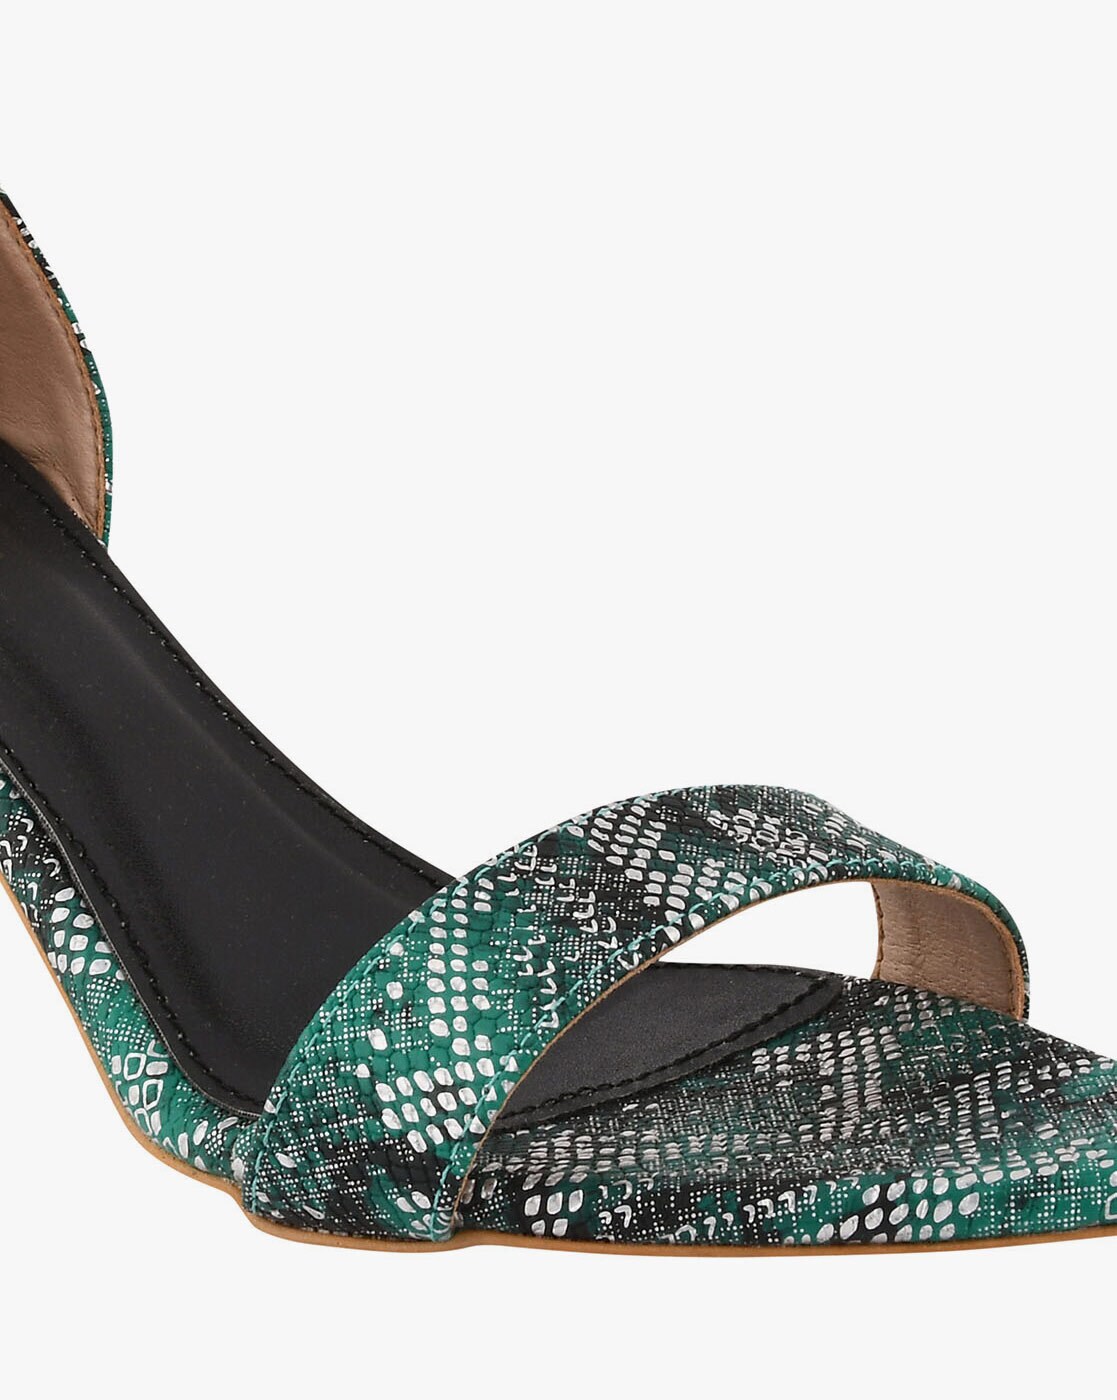 Women's High Heels Shoes | Women's Elegant Shoes | Shoes High Heel Green -  7.5/10cm - Aliexpress